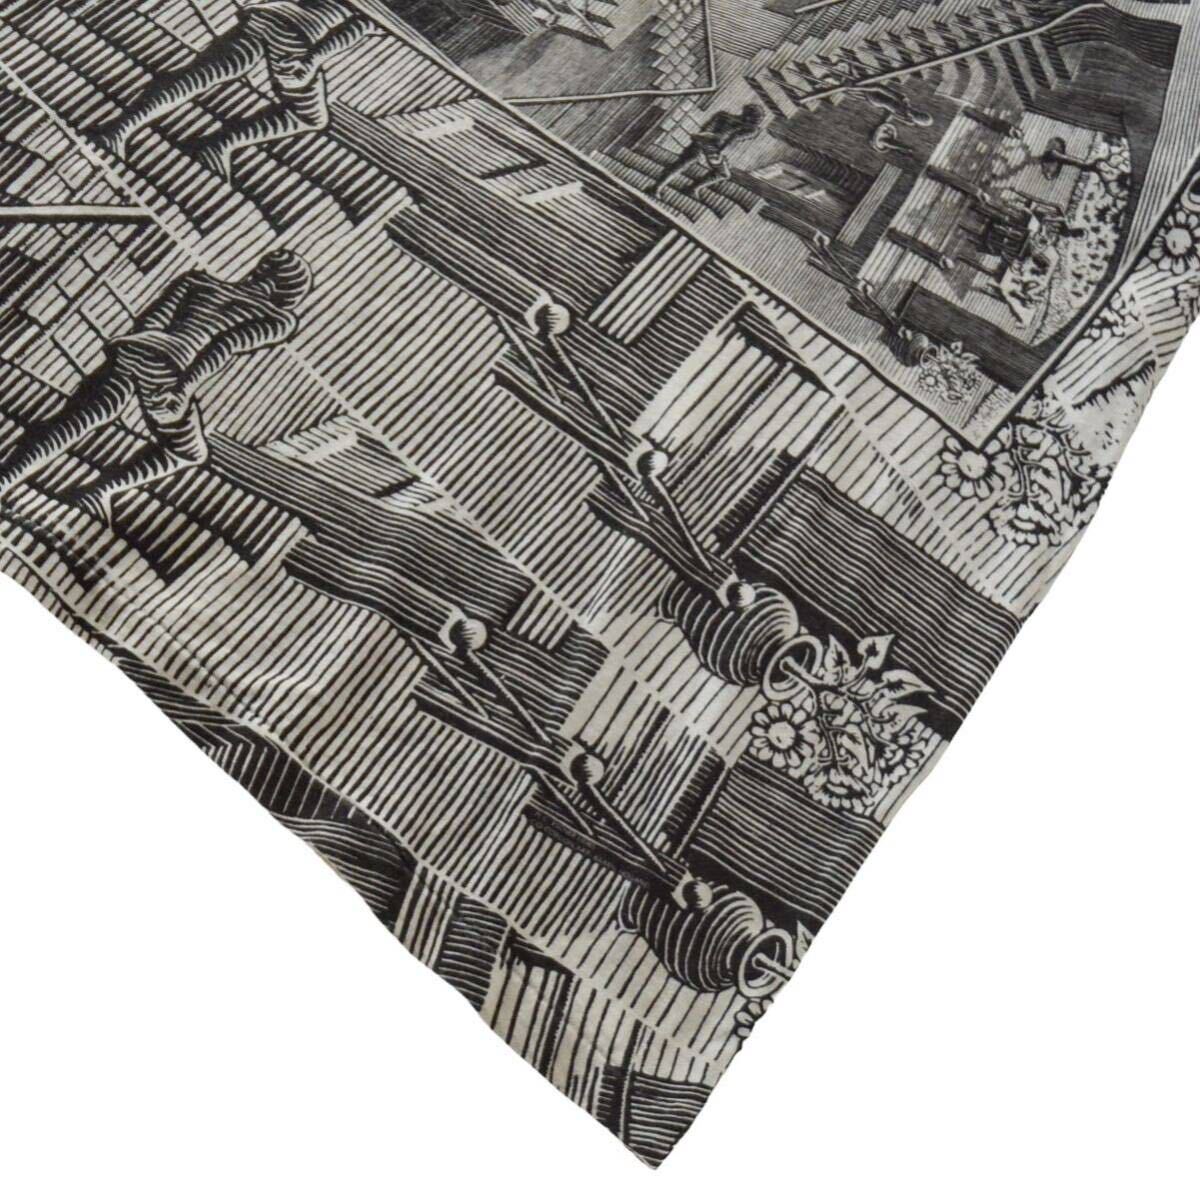 希少【90s M.C.Escher 総柄 マルチ アートプリントTシャツ ANDAZIA XL】ウィンテーシ エッシャー シングルステッチ オールオーバー 相対性